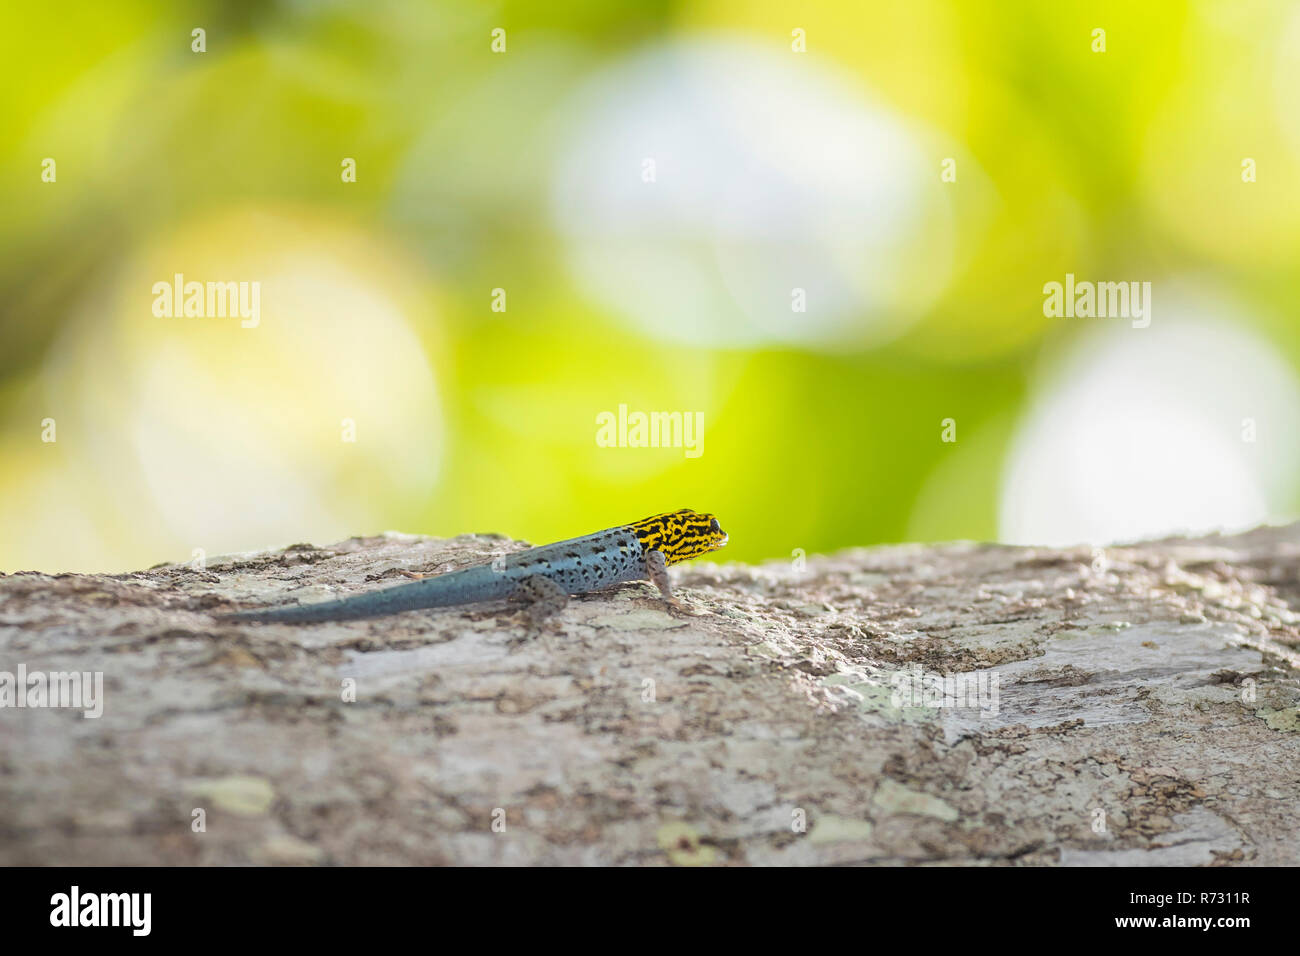 Primer plano de un enano de cabeza amarilla o gecos GECOS enanos de cabeza amarilla Lygodactylus luteopicturatus trepar a un árbol en un soleado bosque selvático. Foto de stock